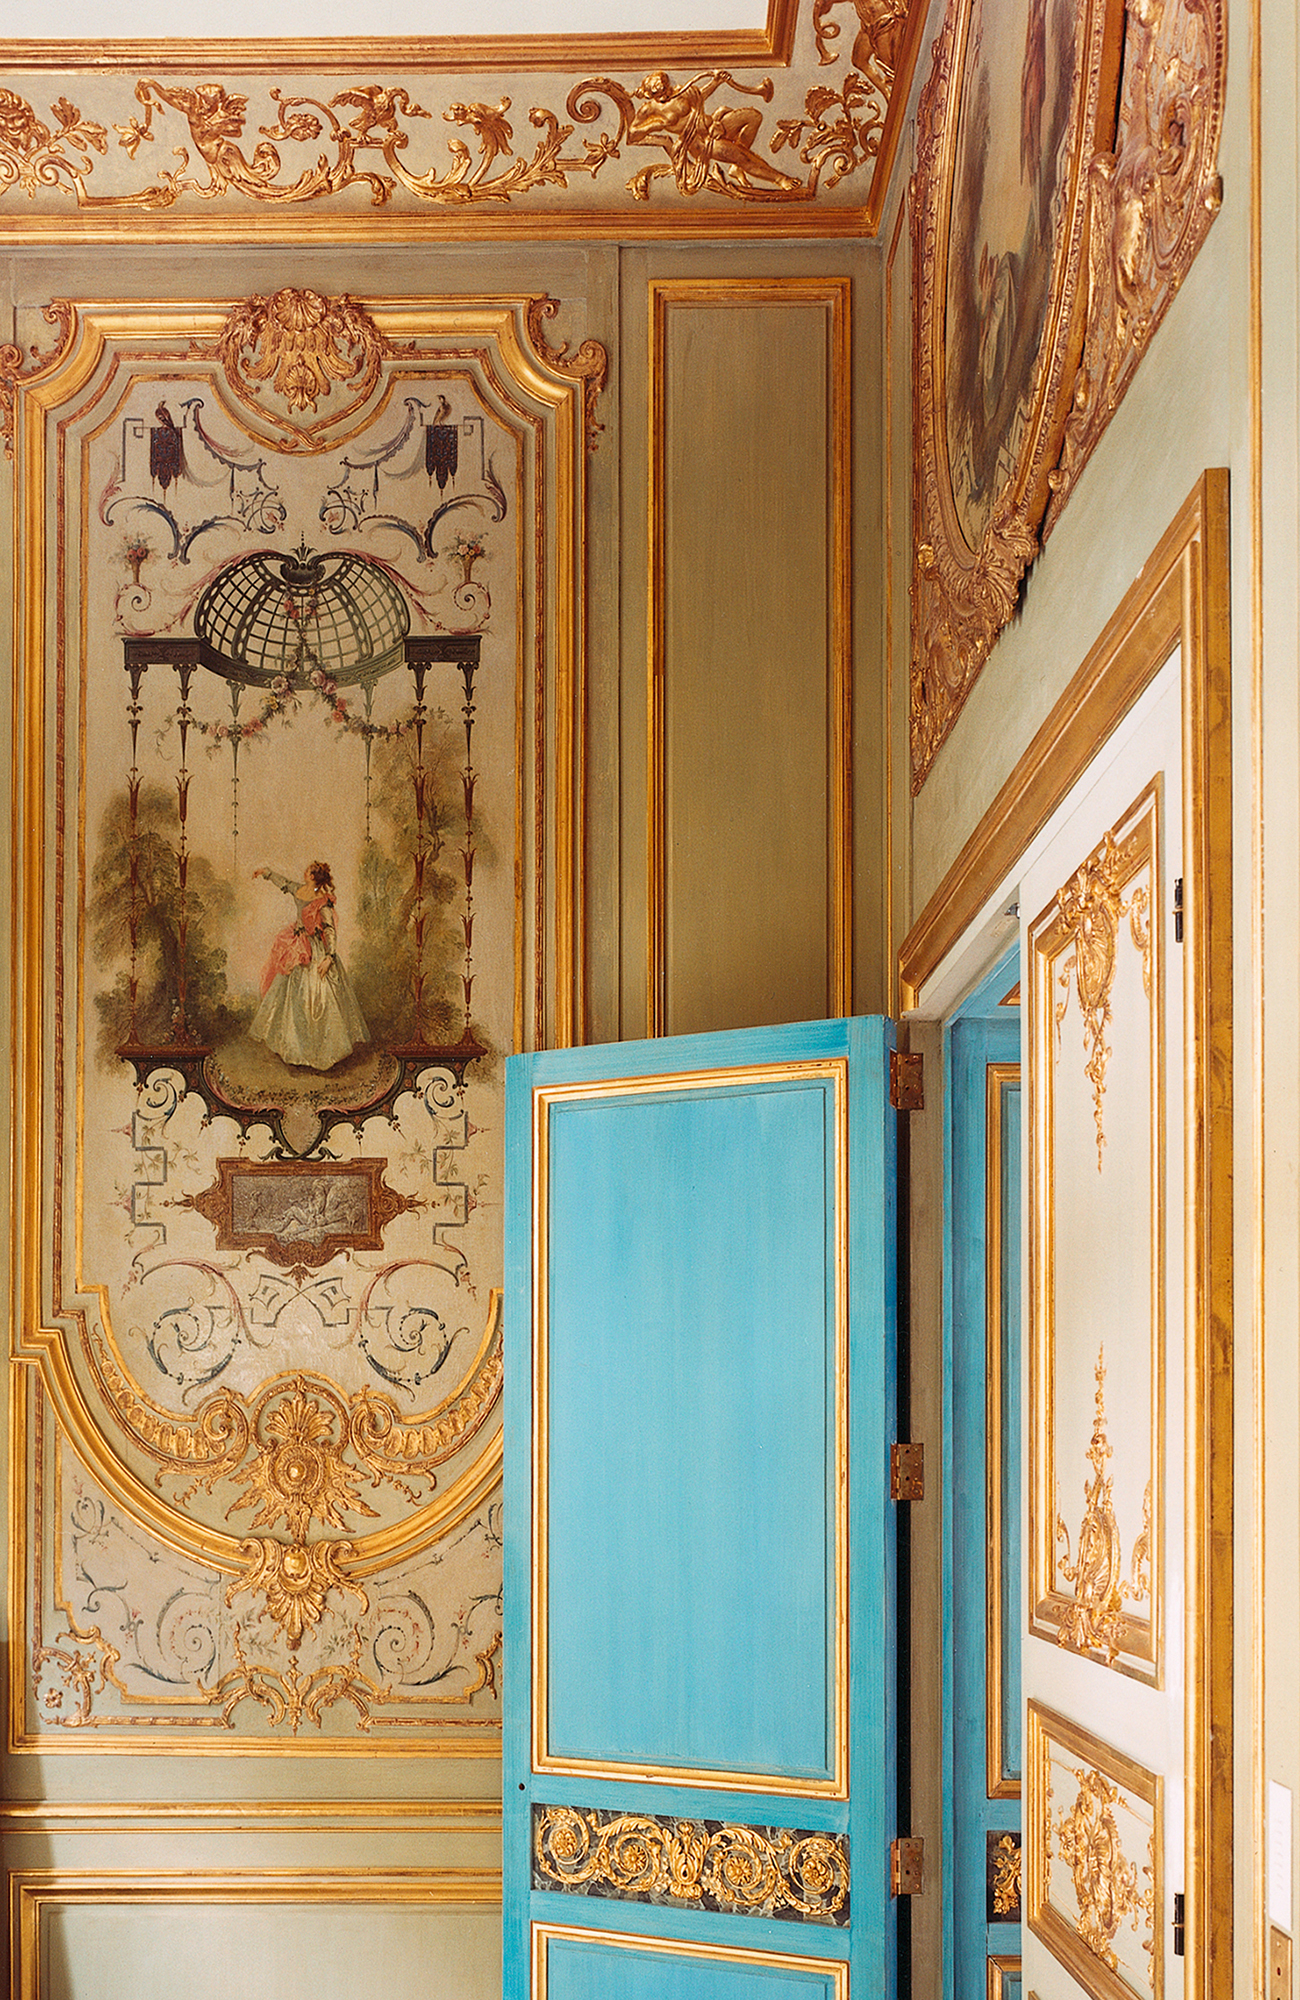 Grand salon, porte, encadrement, corniche, boiserie XVIIIe, blanc et or, attribuee Chateau de Bellevue